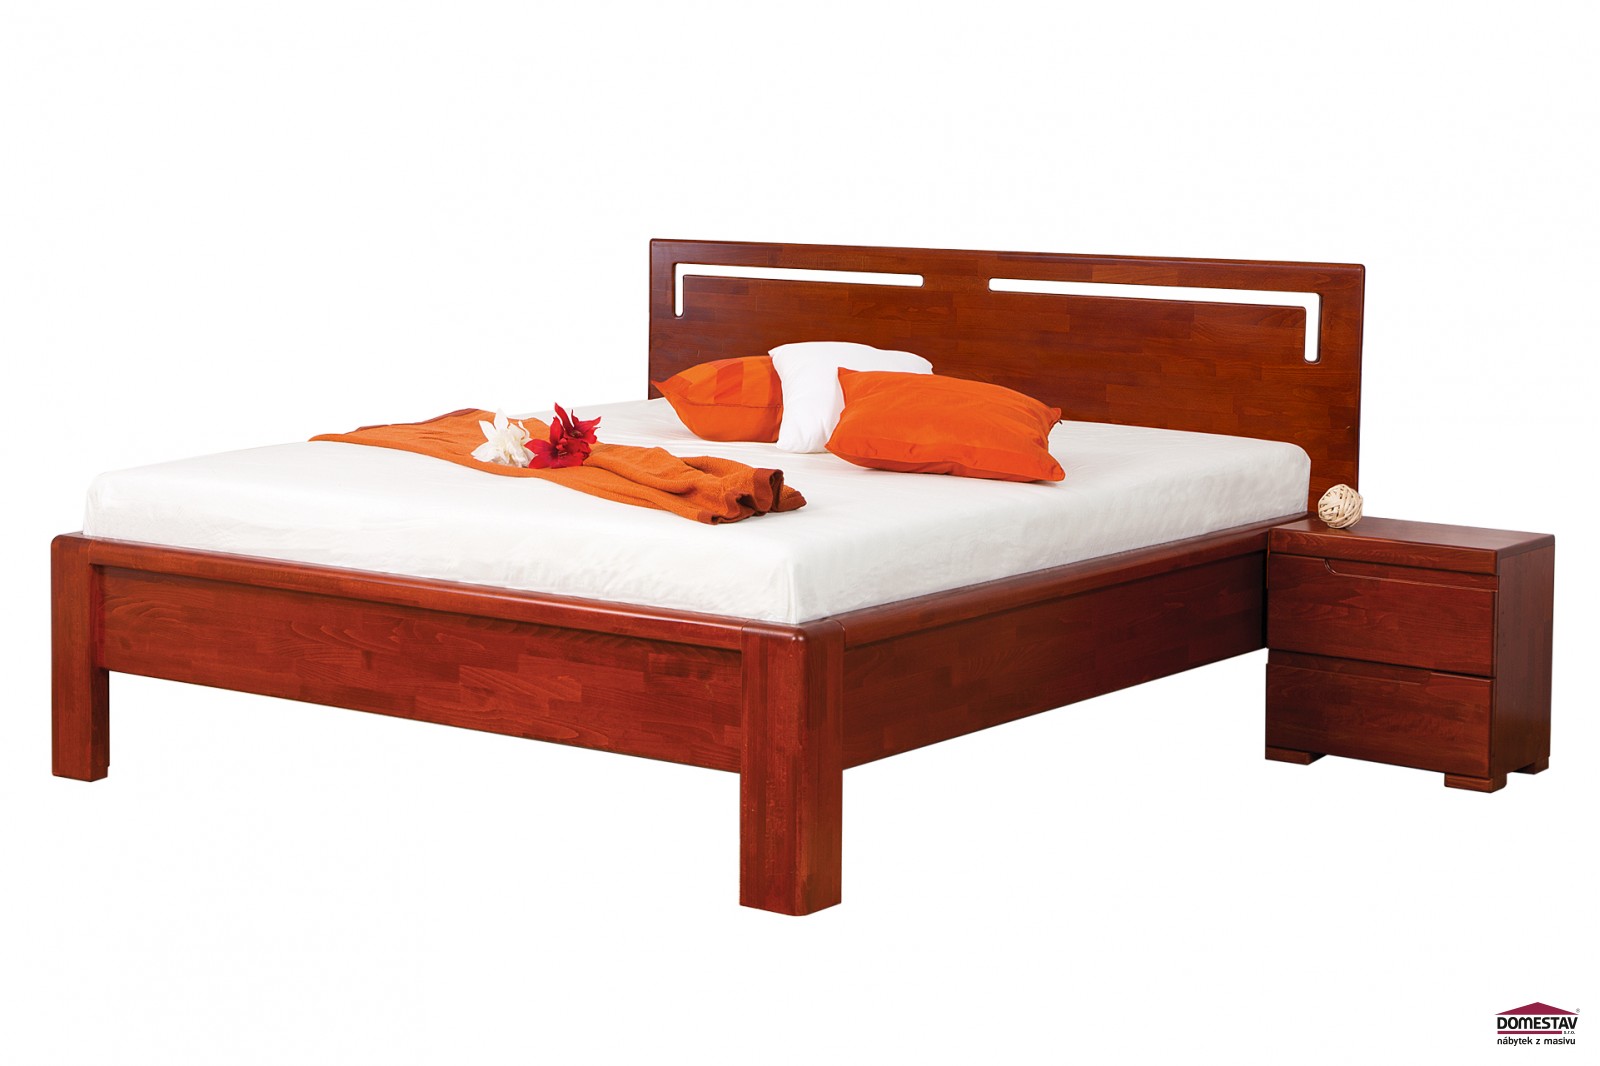 Domestav FLORENCIA manželská postel čelo rovné s výřezy L 180 cm buk cink olejovaný